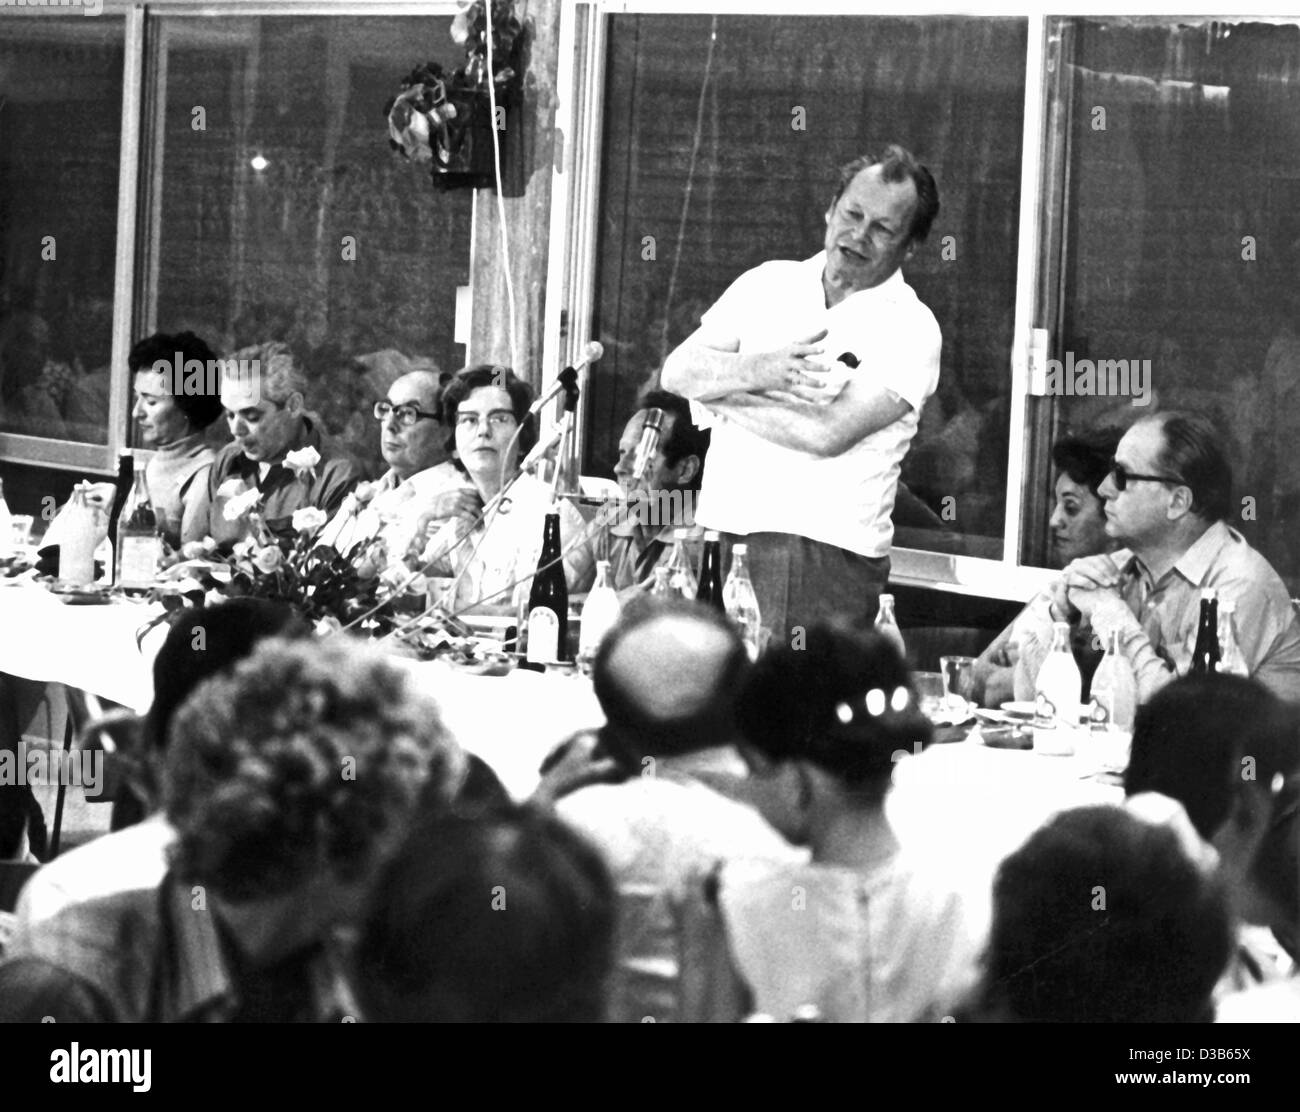 (Dpa file) - West il Cancelliere tedesco Willy Brandt offre un discorso durante un tradizionale pasto di sabato nel Kibbutz Ginosar sul lago Genezareth in Israele, 8 giugno 1973. Willy Brandt è il primo leader tedesco a visitare Israele dal 7 al 11 giugno. Foto Stock